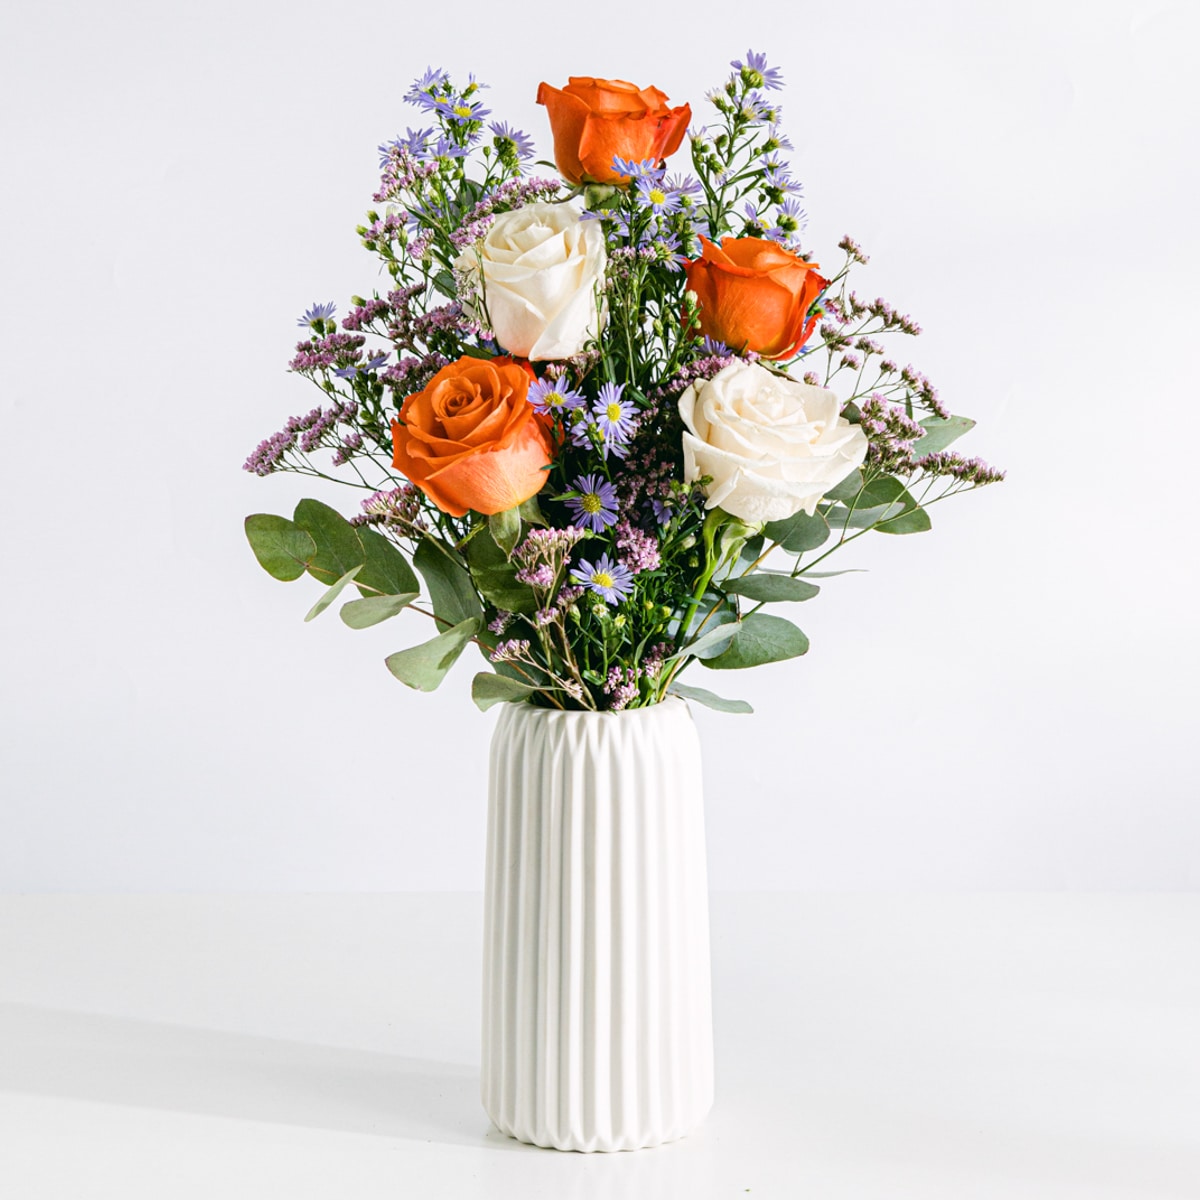 Buquê de flores incluindo rosas brancas, laranja e áster com vaso